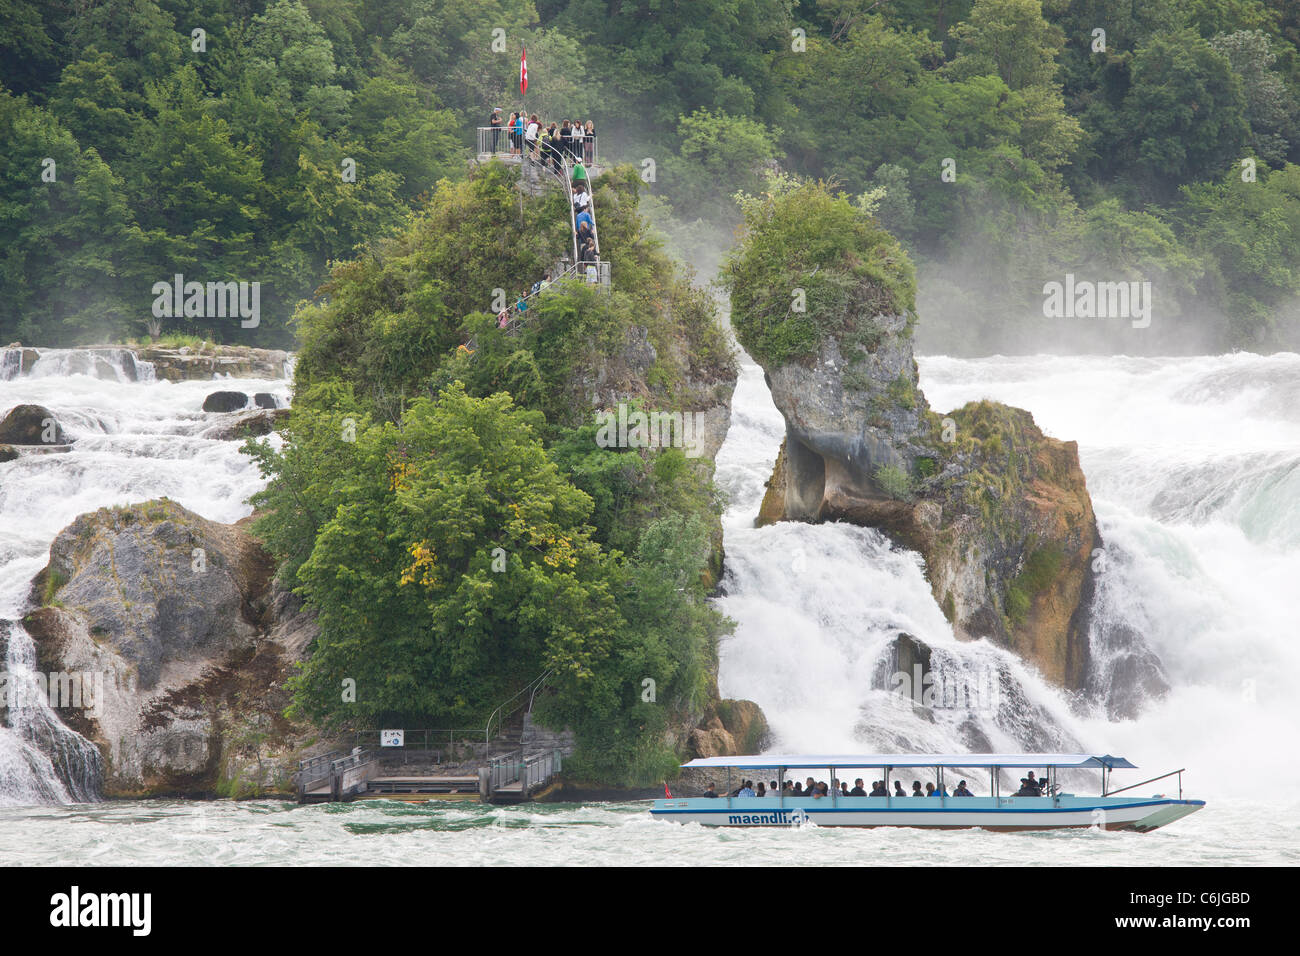 Touristenboot und Besucher am Rheinfall bei Schaffhausen - der größte in Europa (Rheinfall) Stockfoto